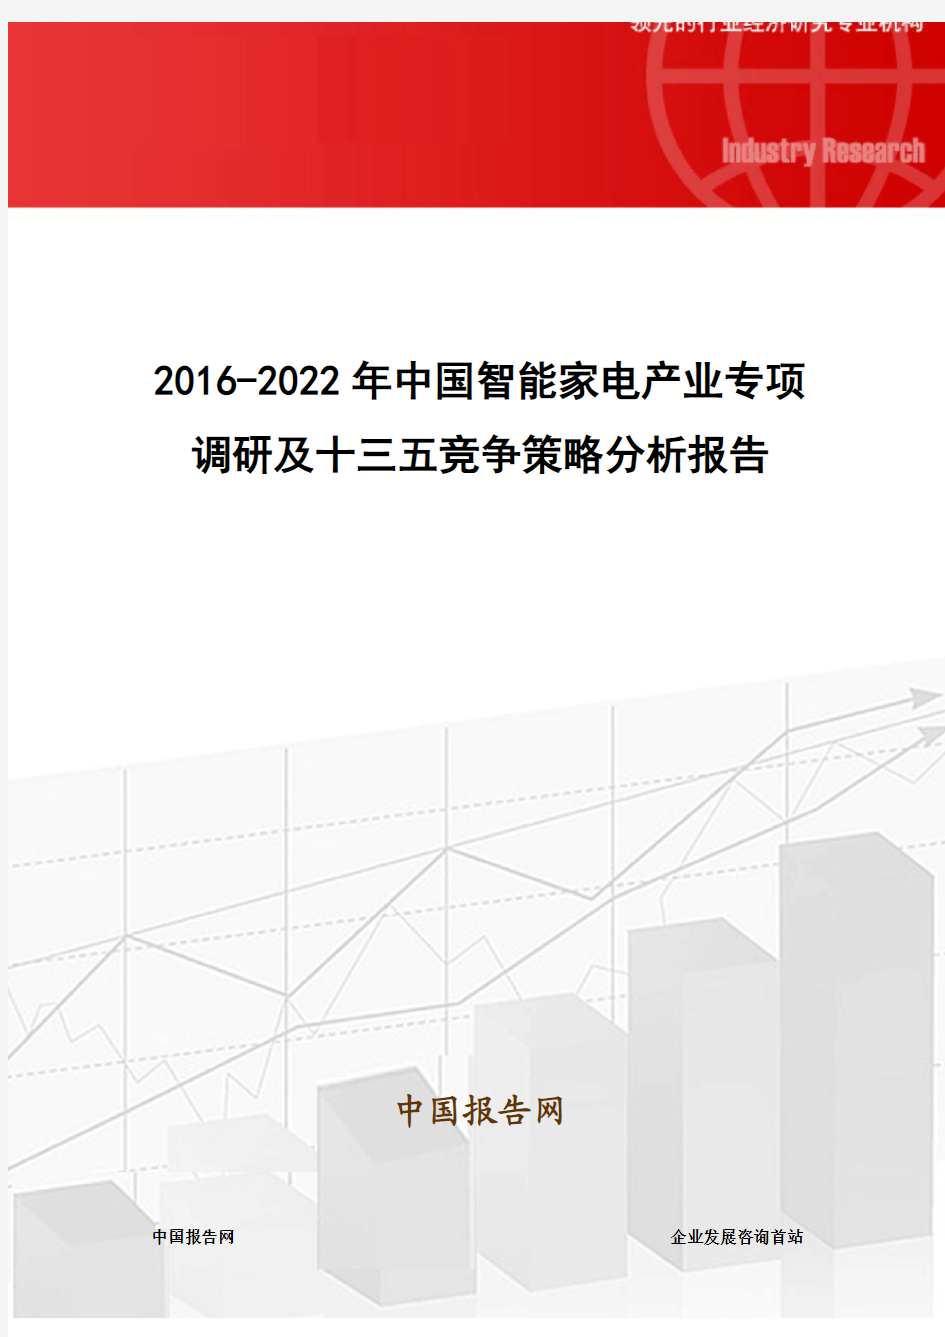 2016-2022年中国智能家电产业专项调研及十三五竞争策略分析报告